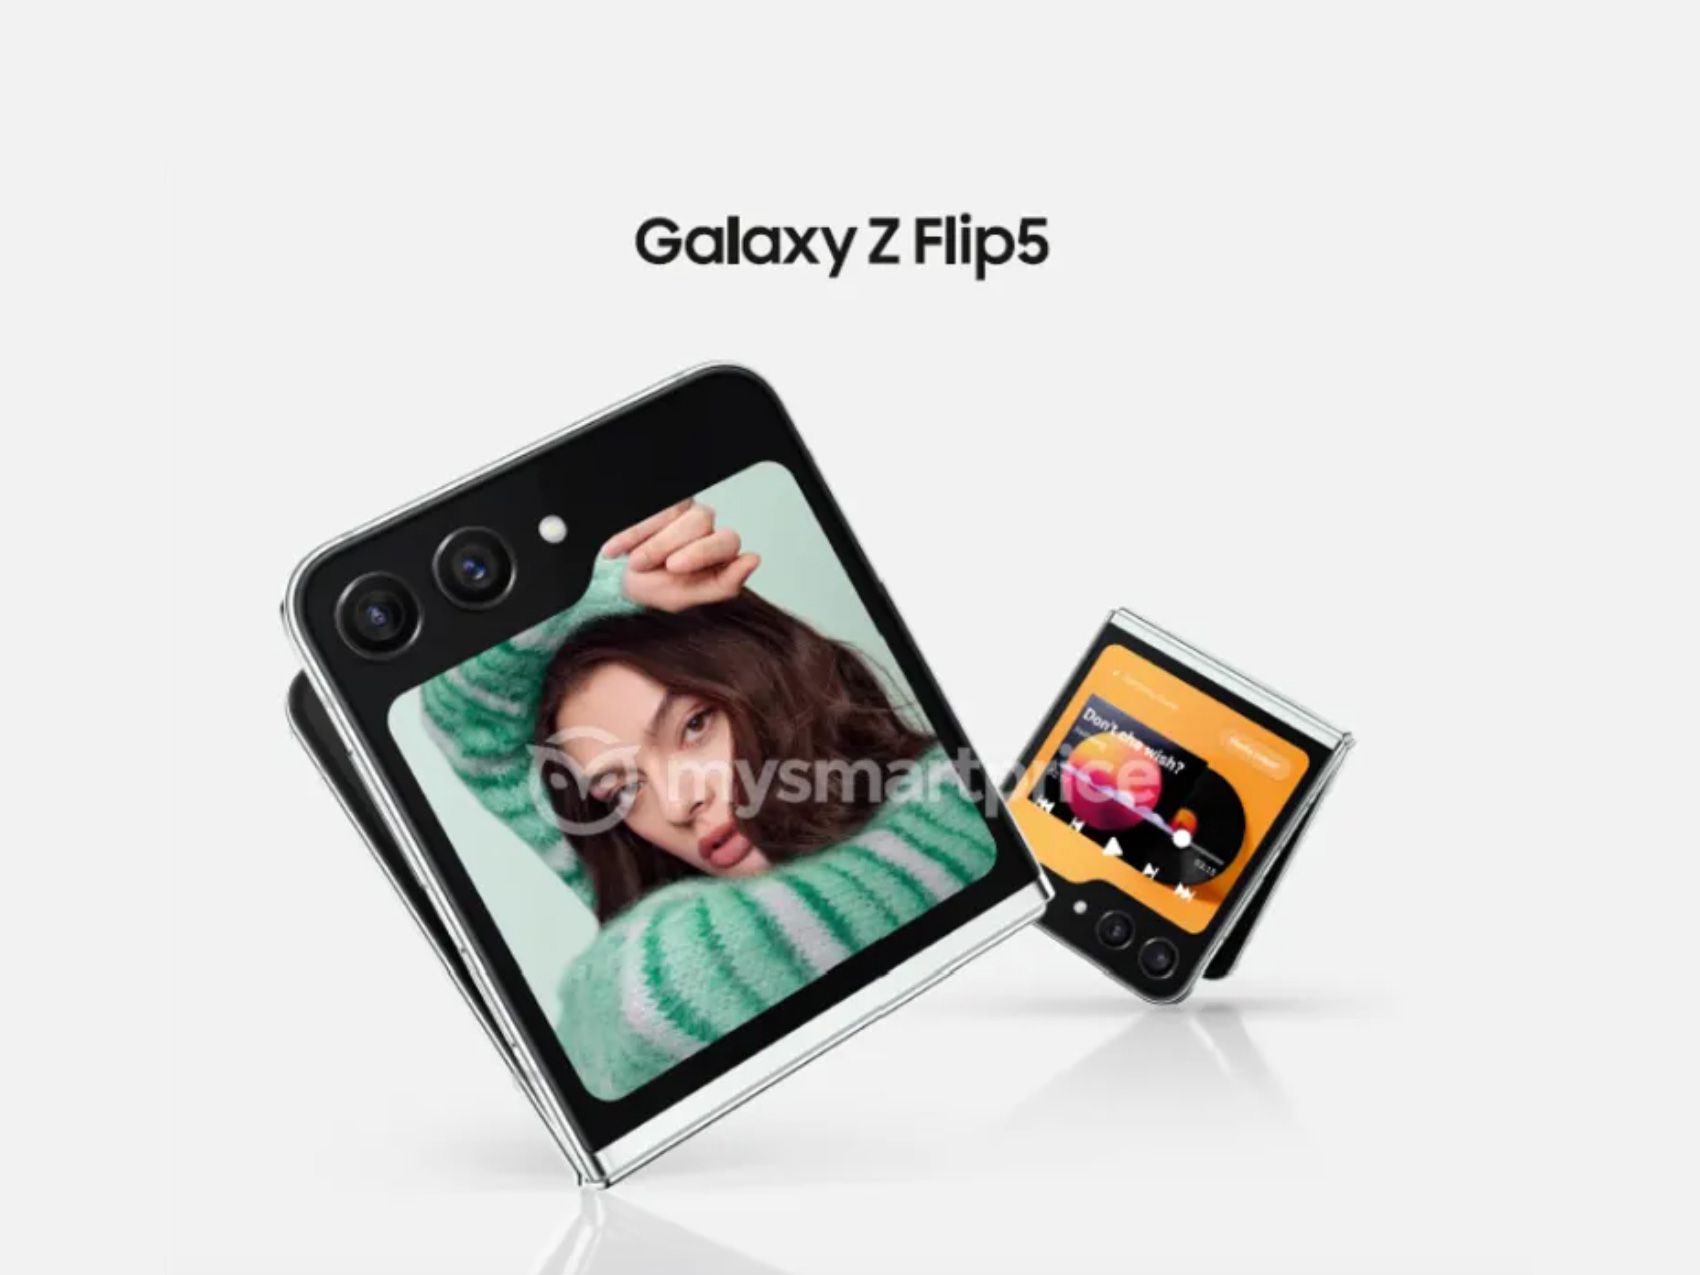 +20%: Samsung kan øge prisen på Galaxy Flip 5 clamshell betydeligt